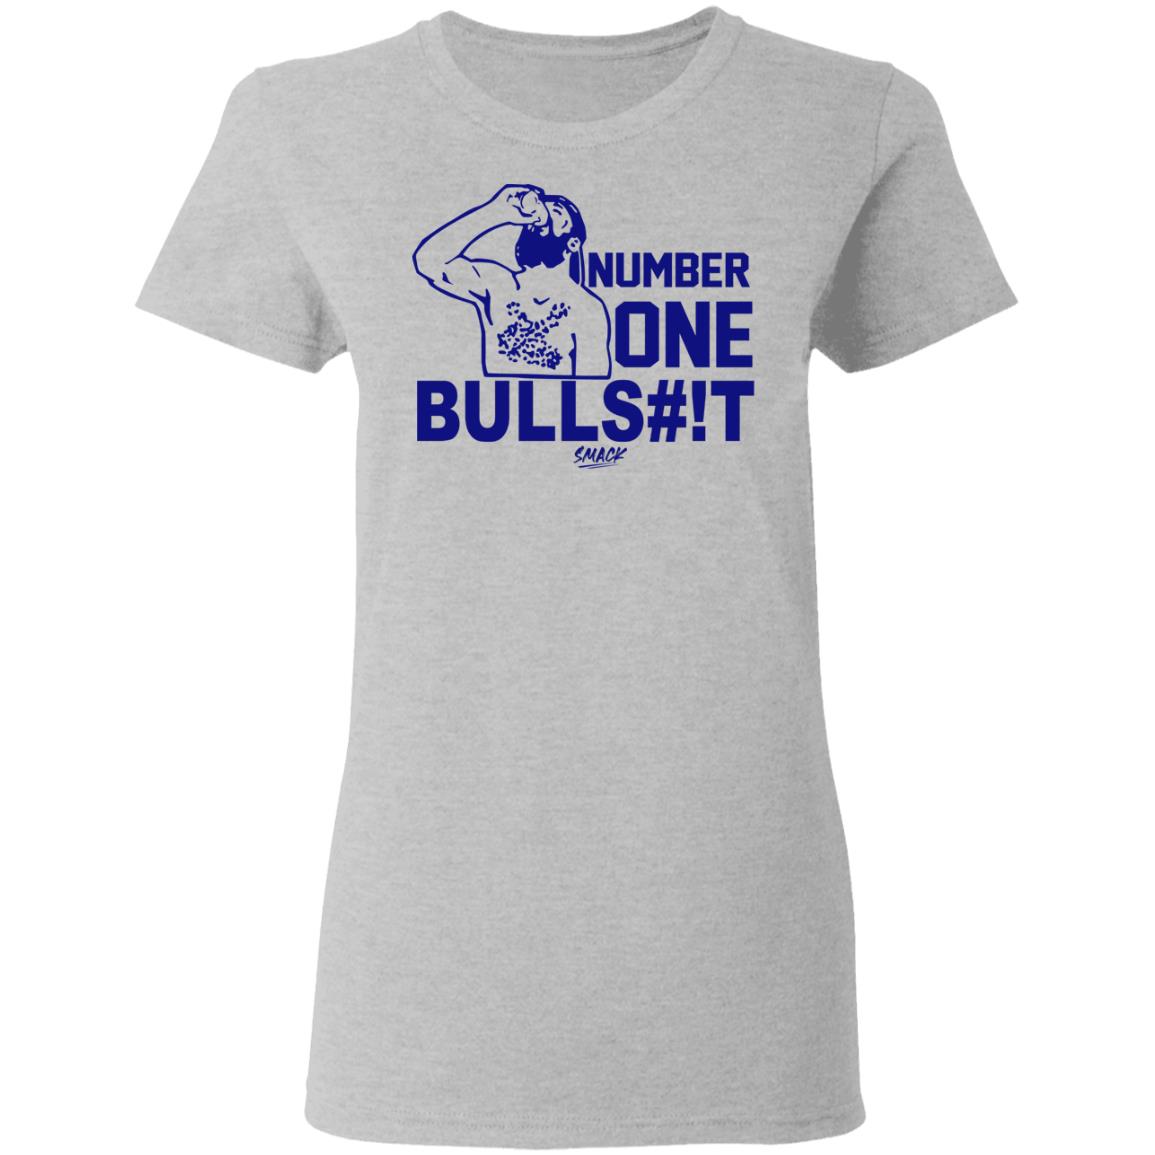 Number one bullshit shirt